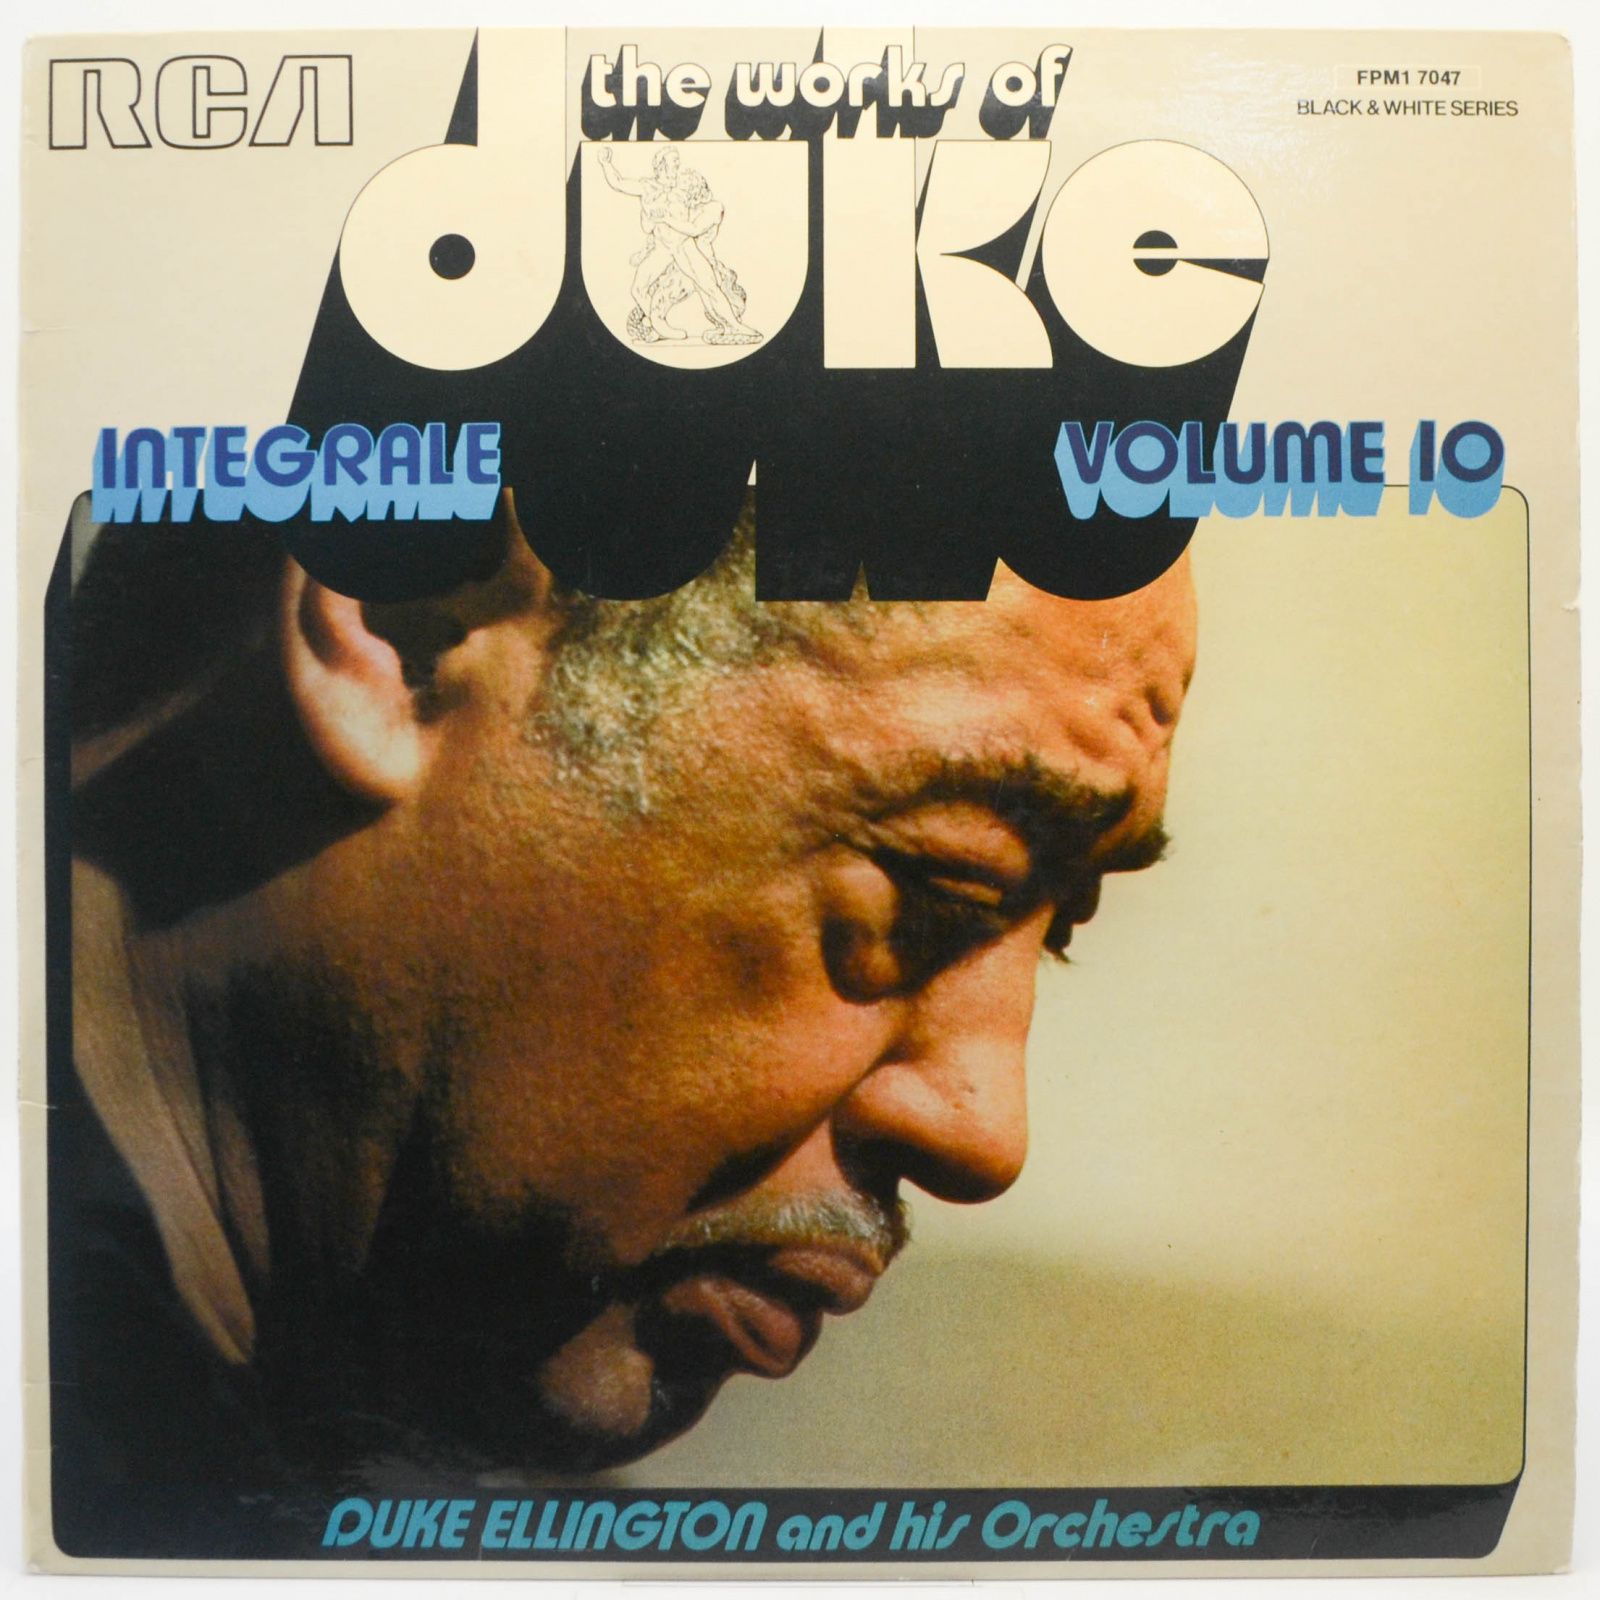 The Works Of Duke - Integrale Volume 10, 1974